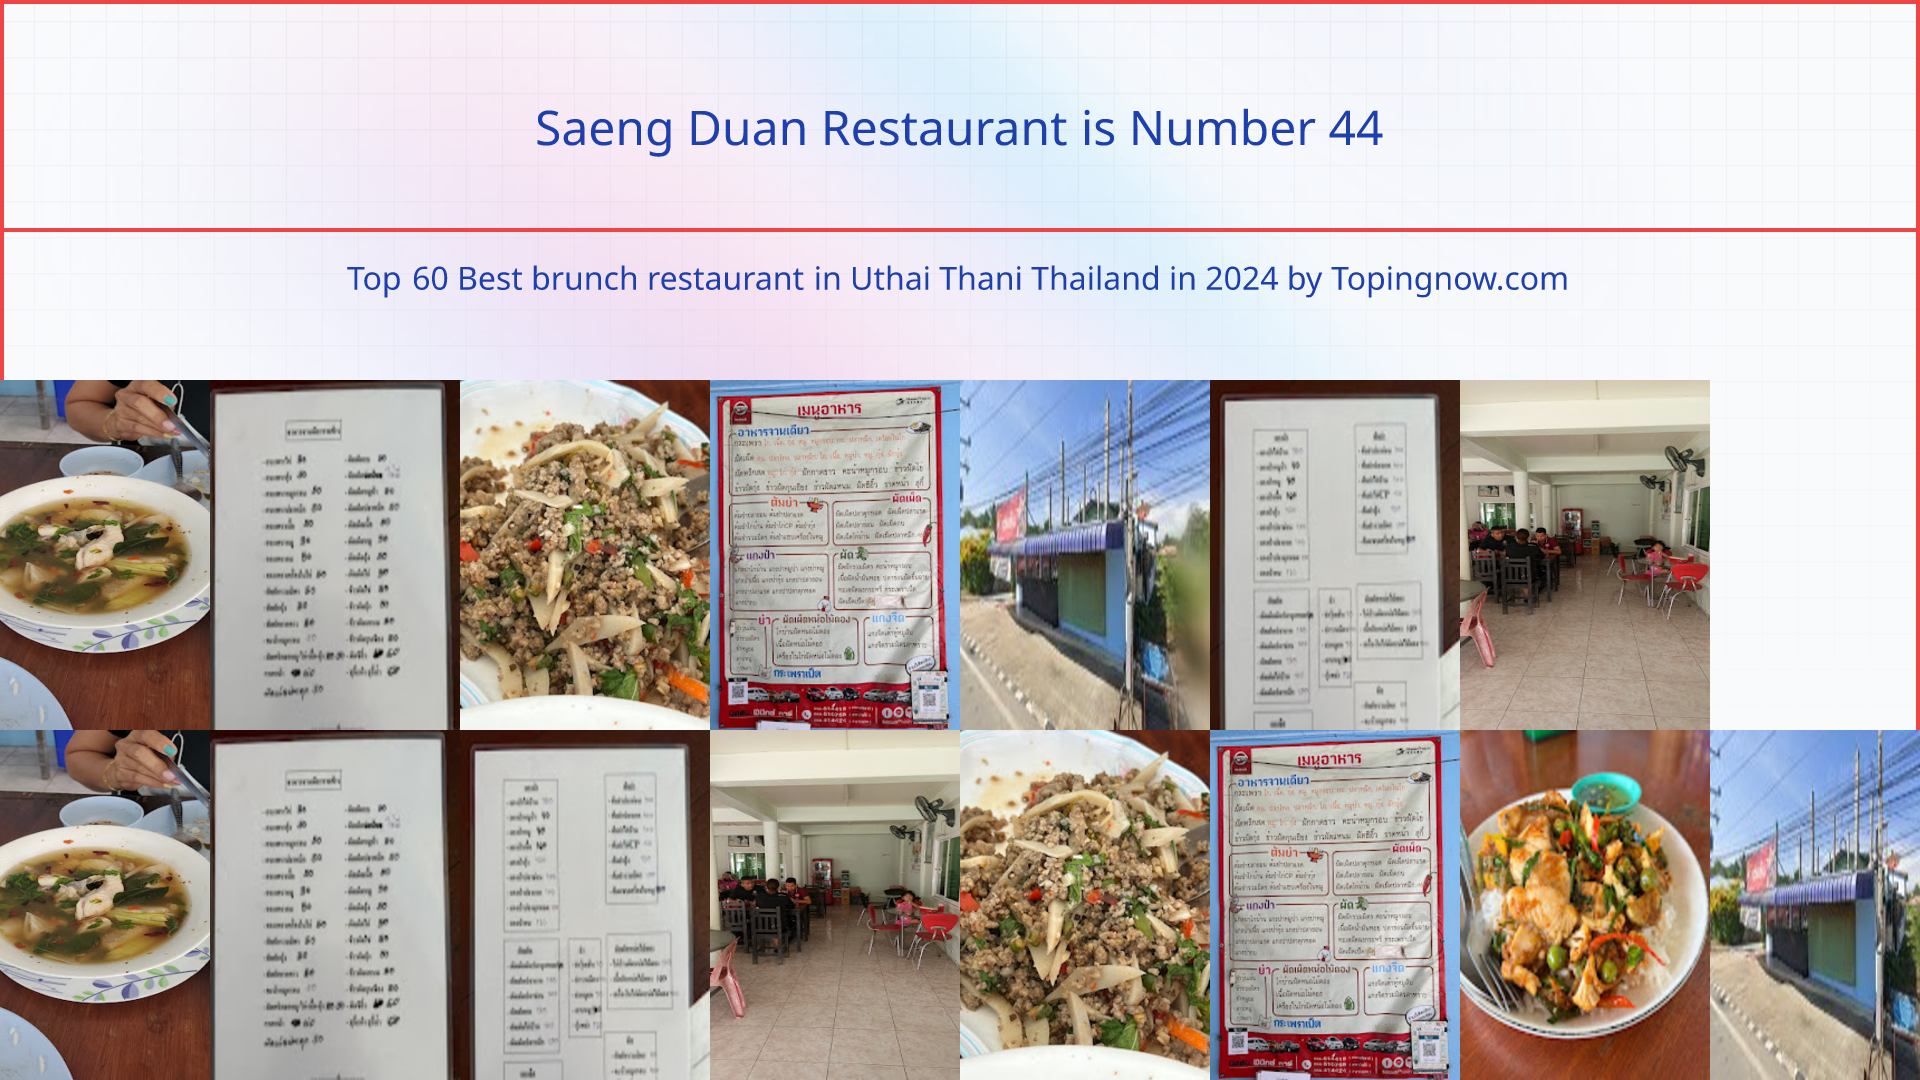 Saeng Duan Restaurant: Top 60 Best brunch restaurant in Uthai Thani Thailand in 2024